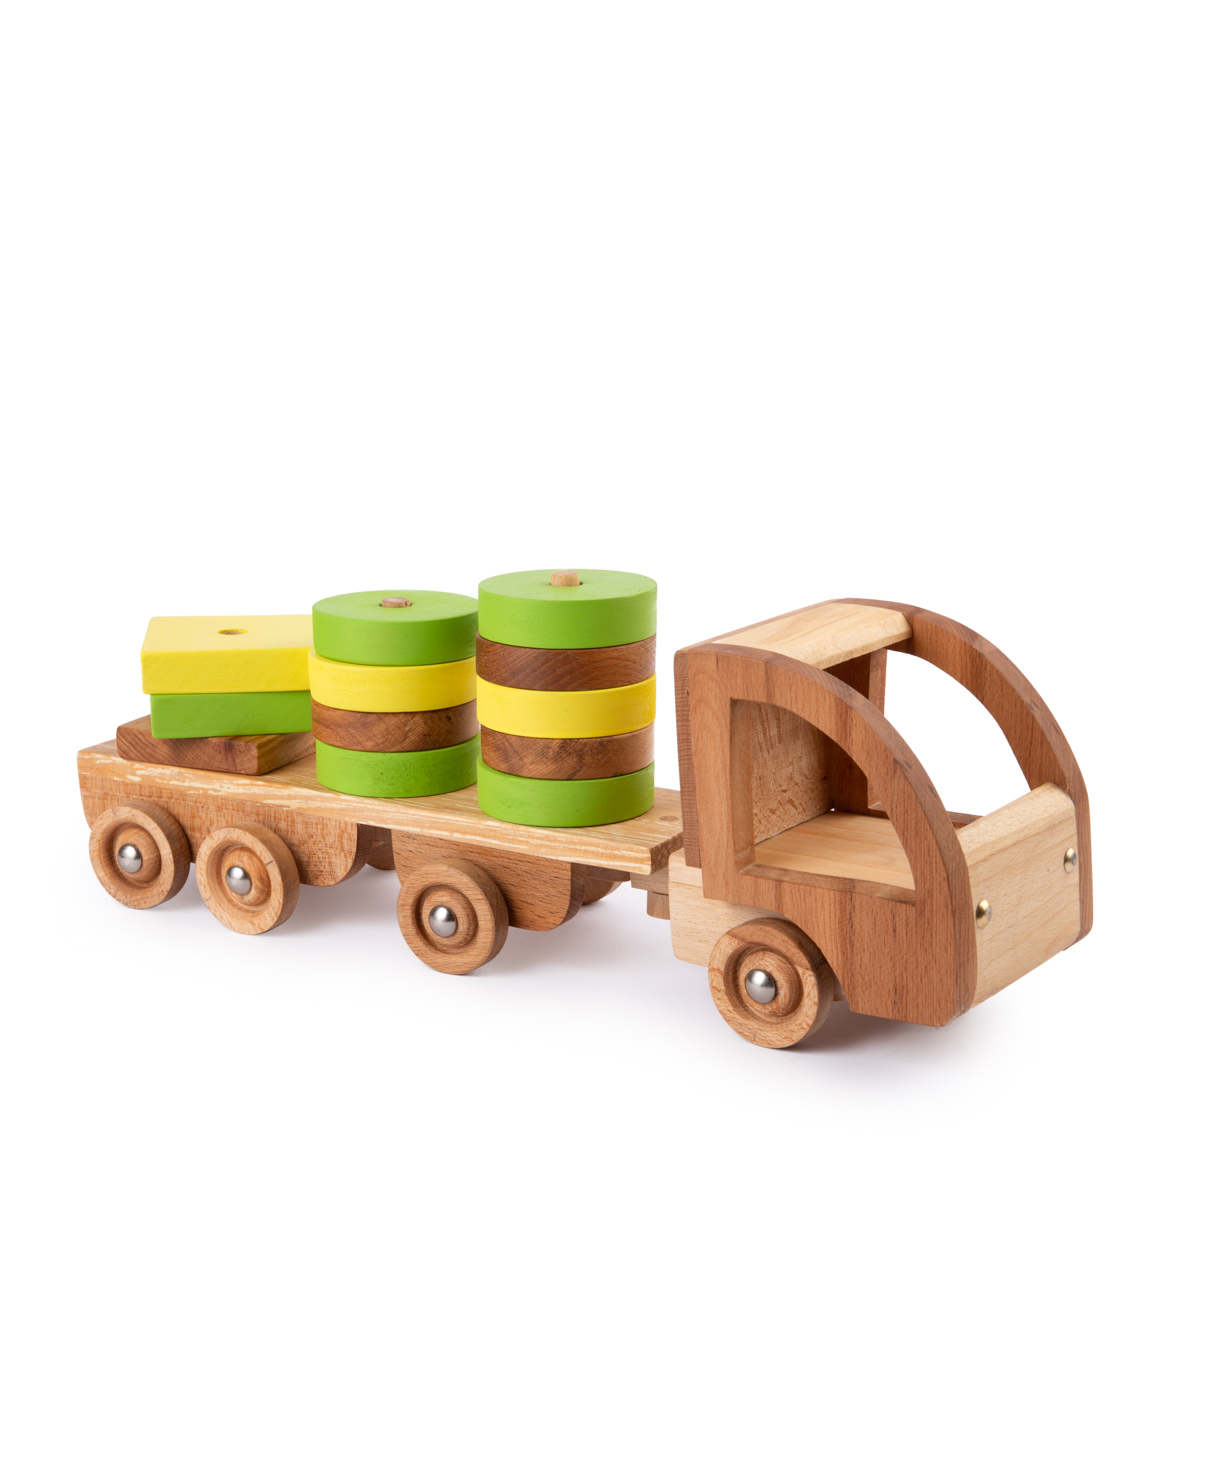 Խաղալիք «Im wooden toys» կոնստրուկտոր - մեքենա №2